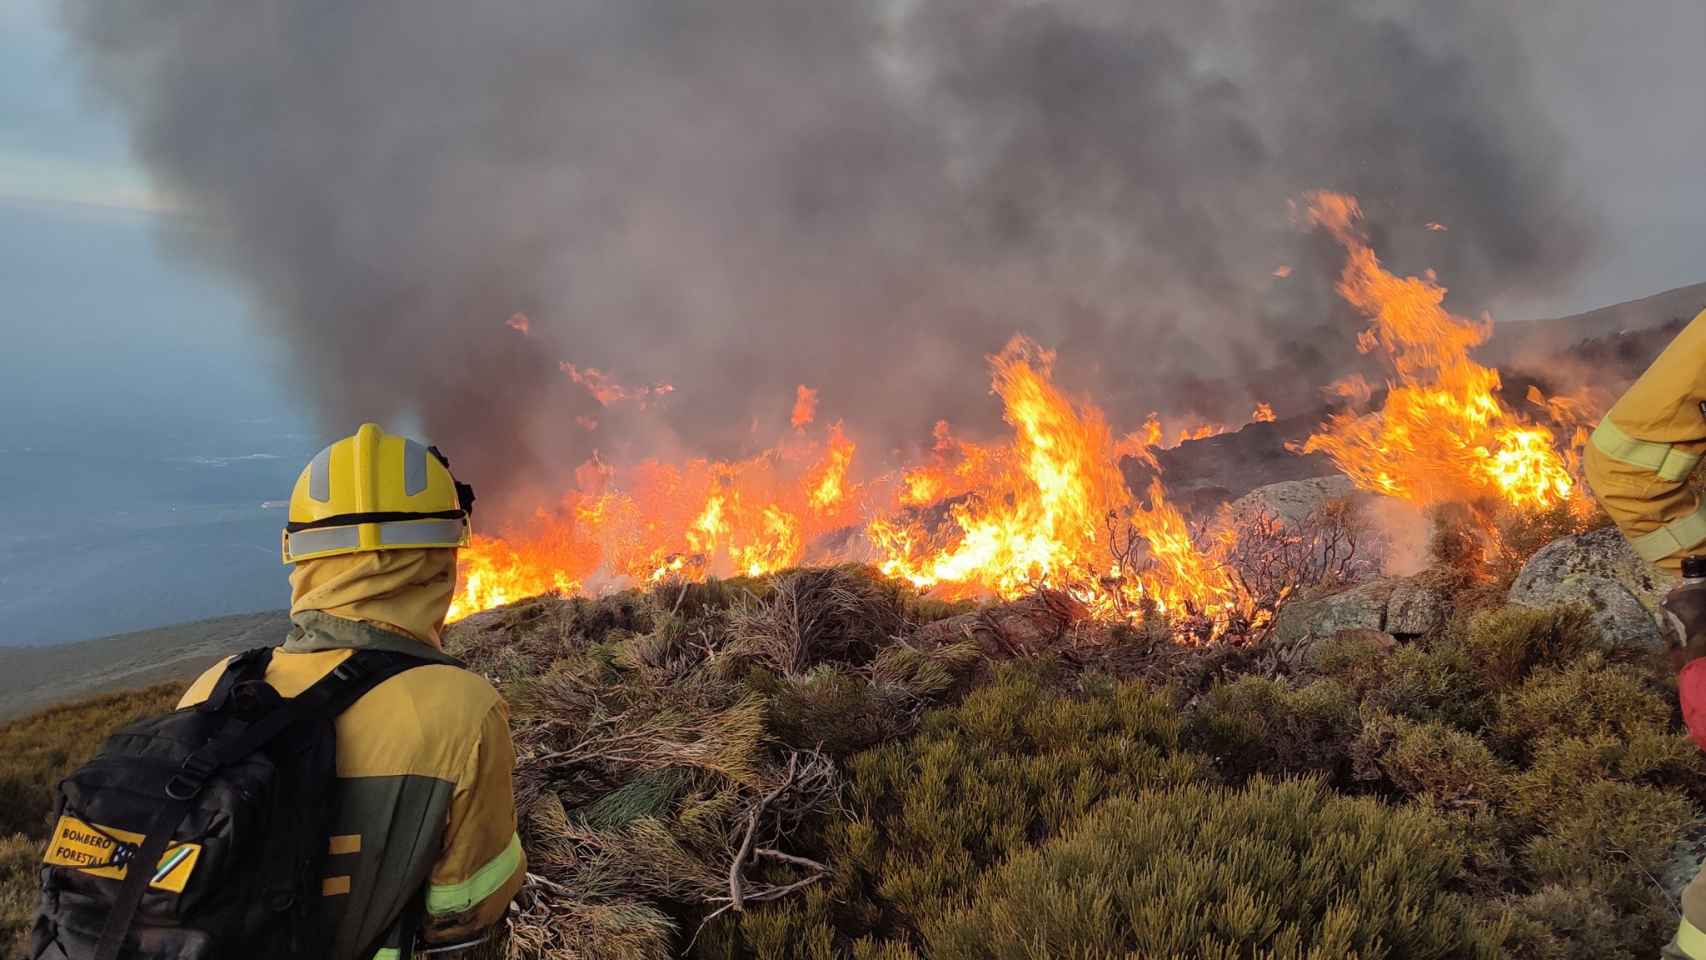 Labores de extinción del incendio forestal de Candelario